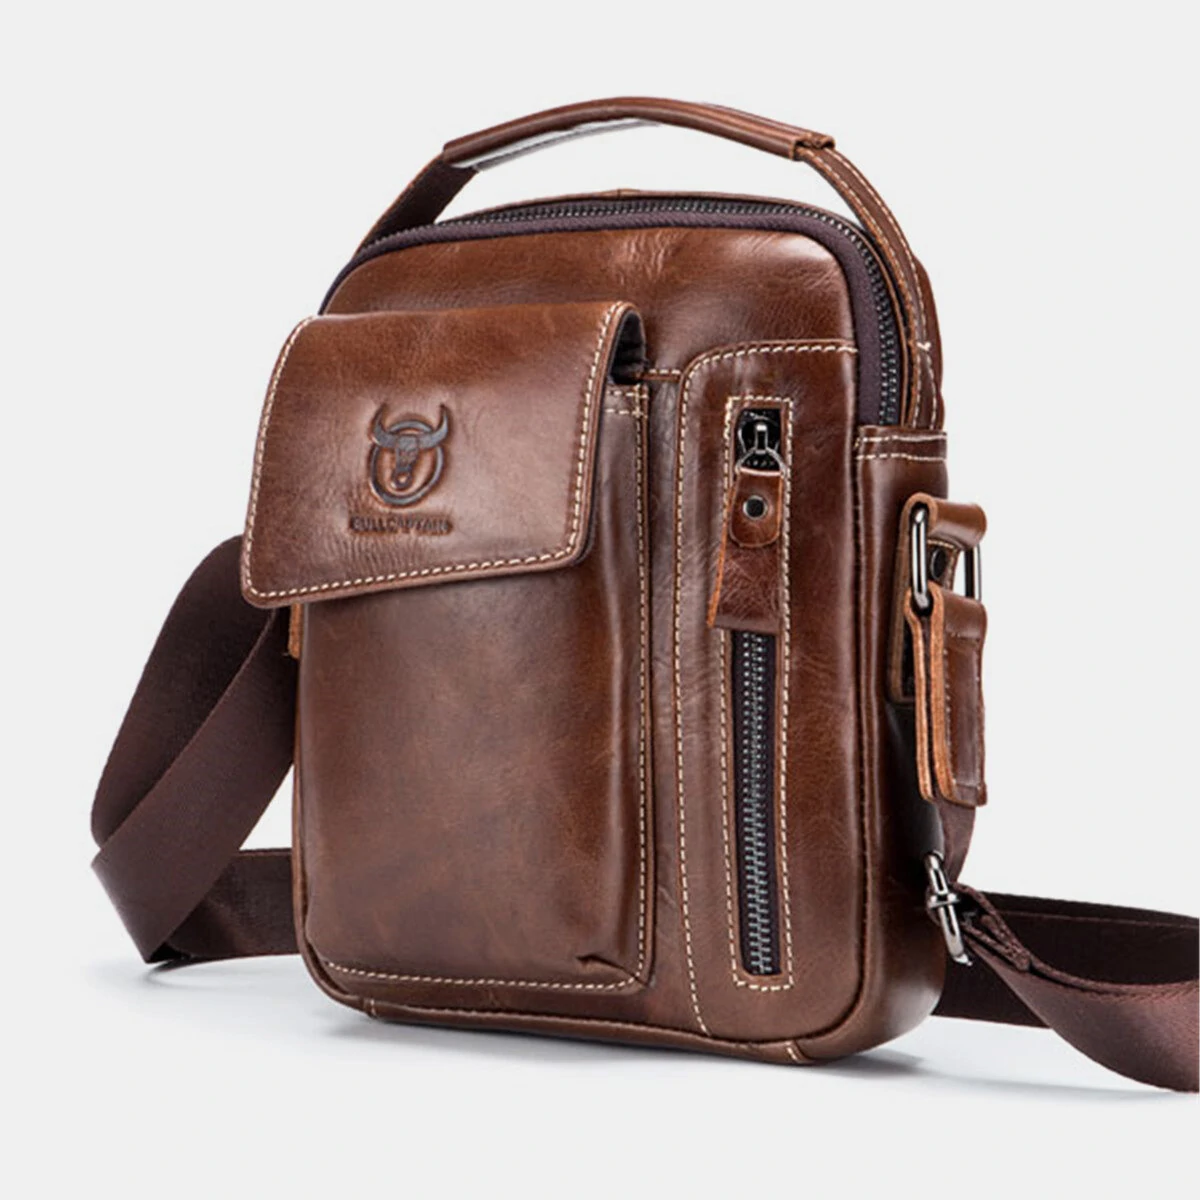 Bullcaptain genuine leather business messenger bag vintage mini shoulder bag crossbody bag for men